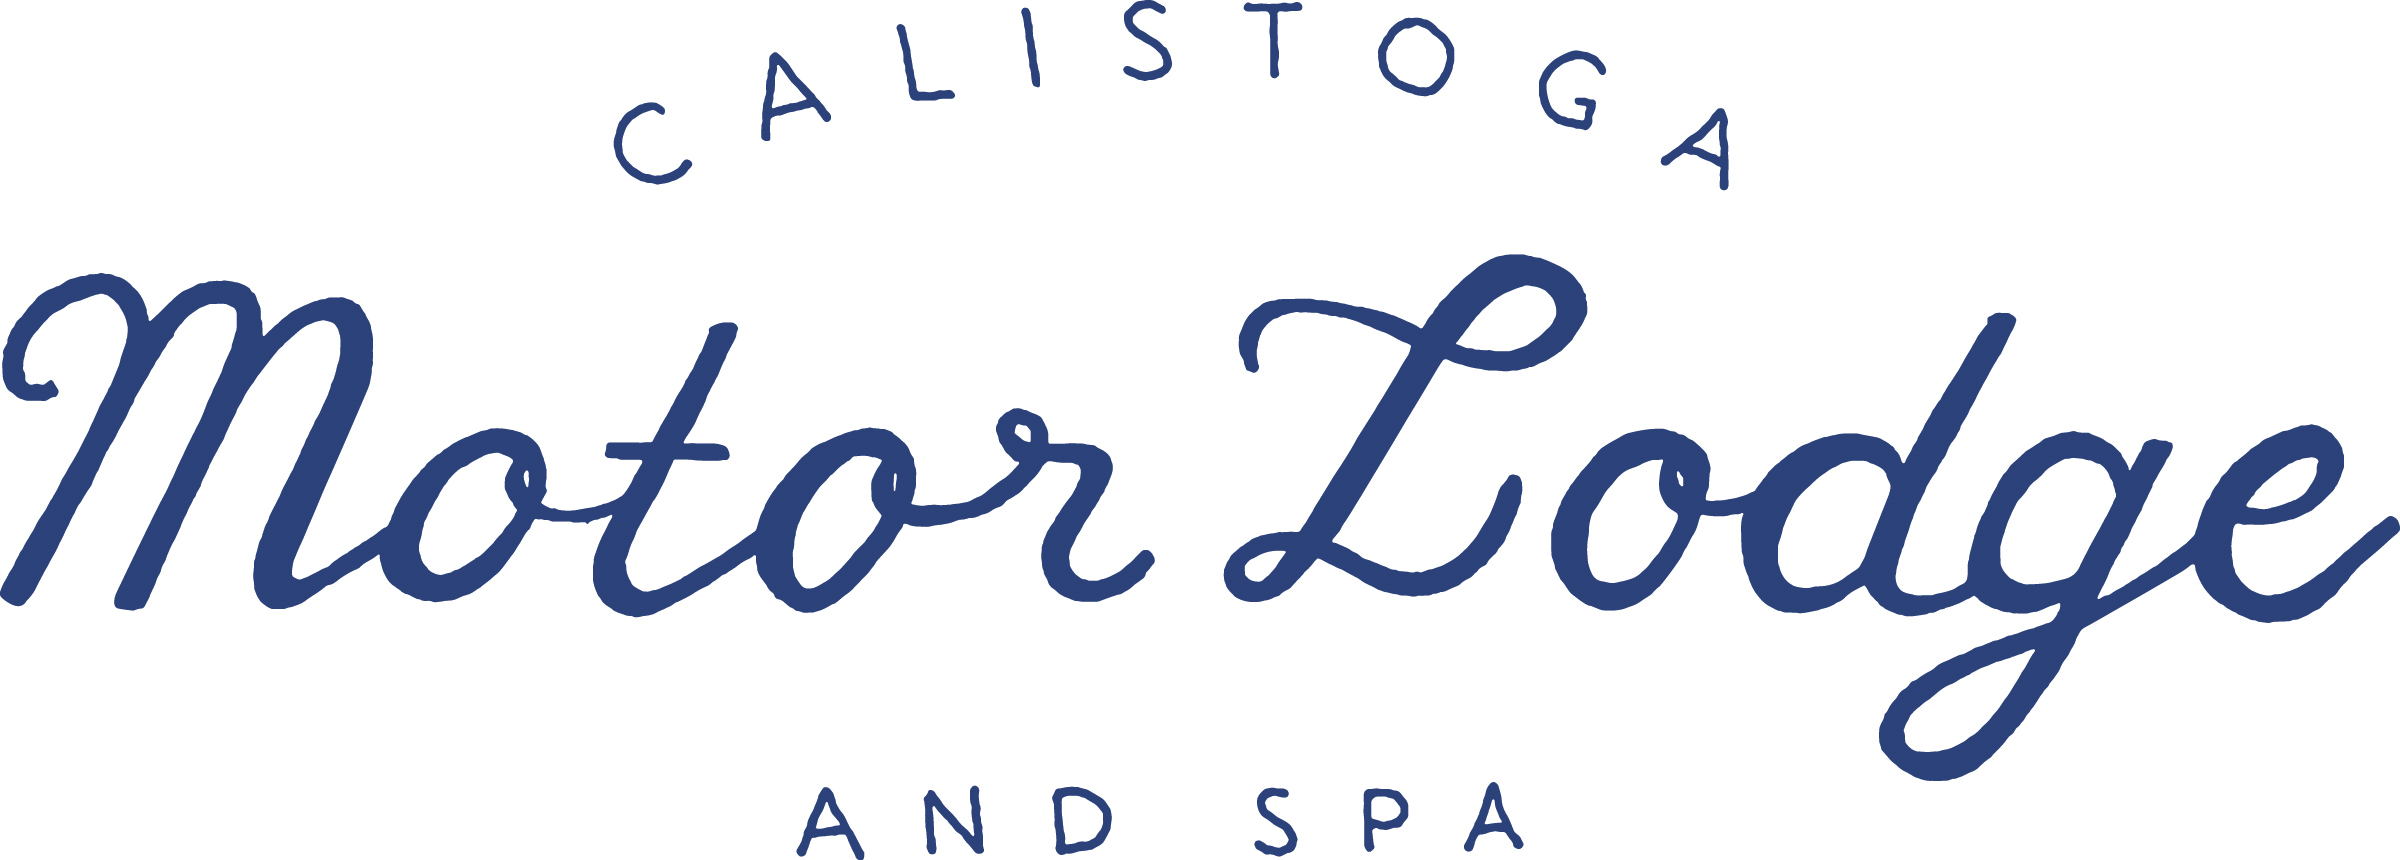 Logo for Calistoga Motor Lodge and Spa